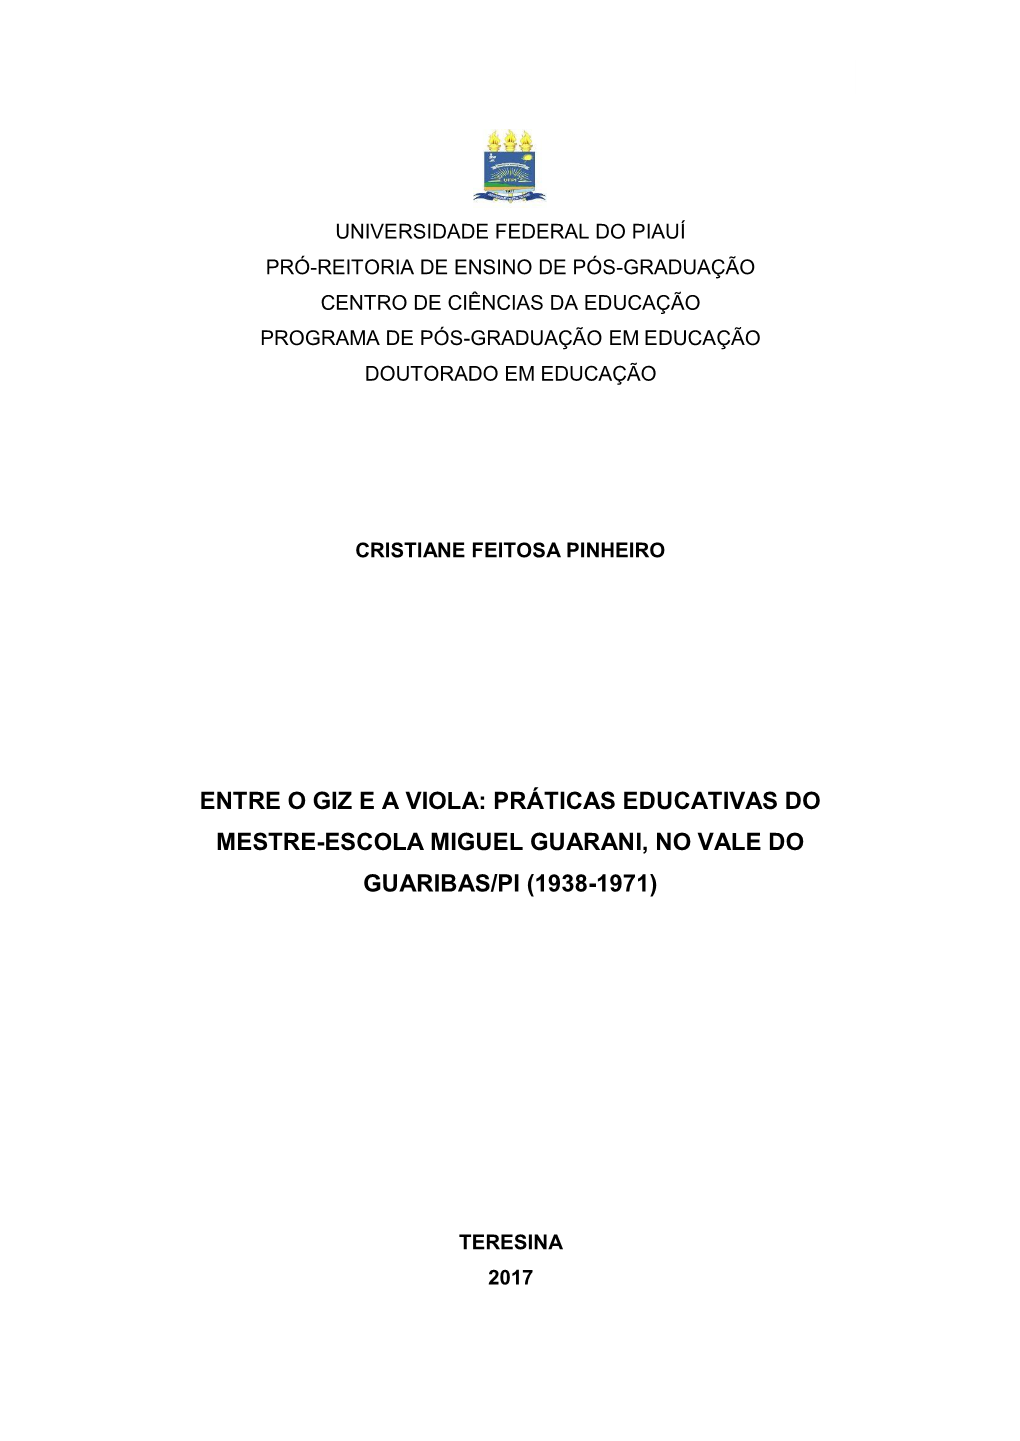 Entre O Giz E a Viola: Práticas Educativas Do Mestre-Escola Miguel Guarani, No Vale Do Guaribas/Pi (1938-1971)